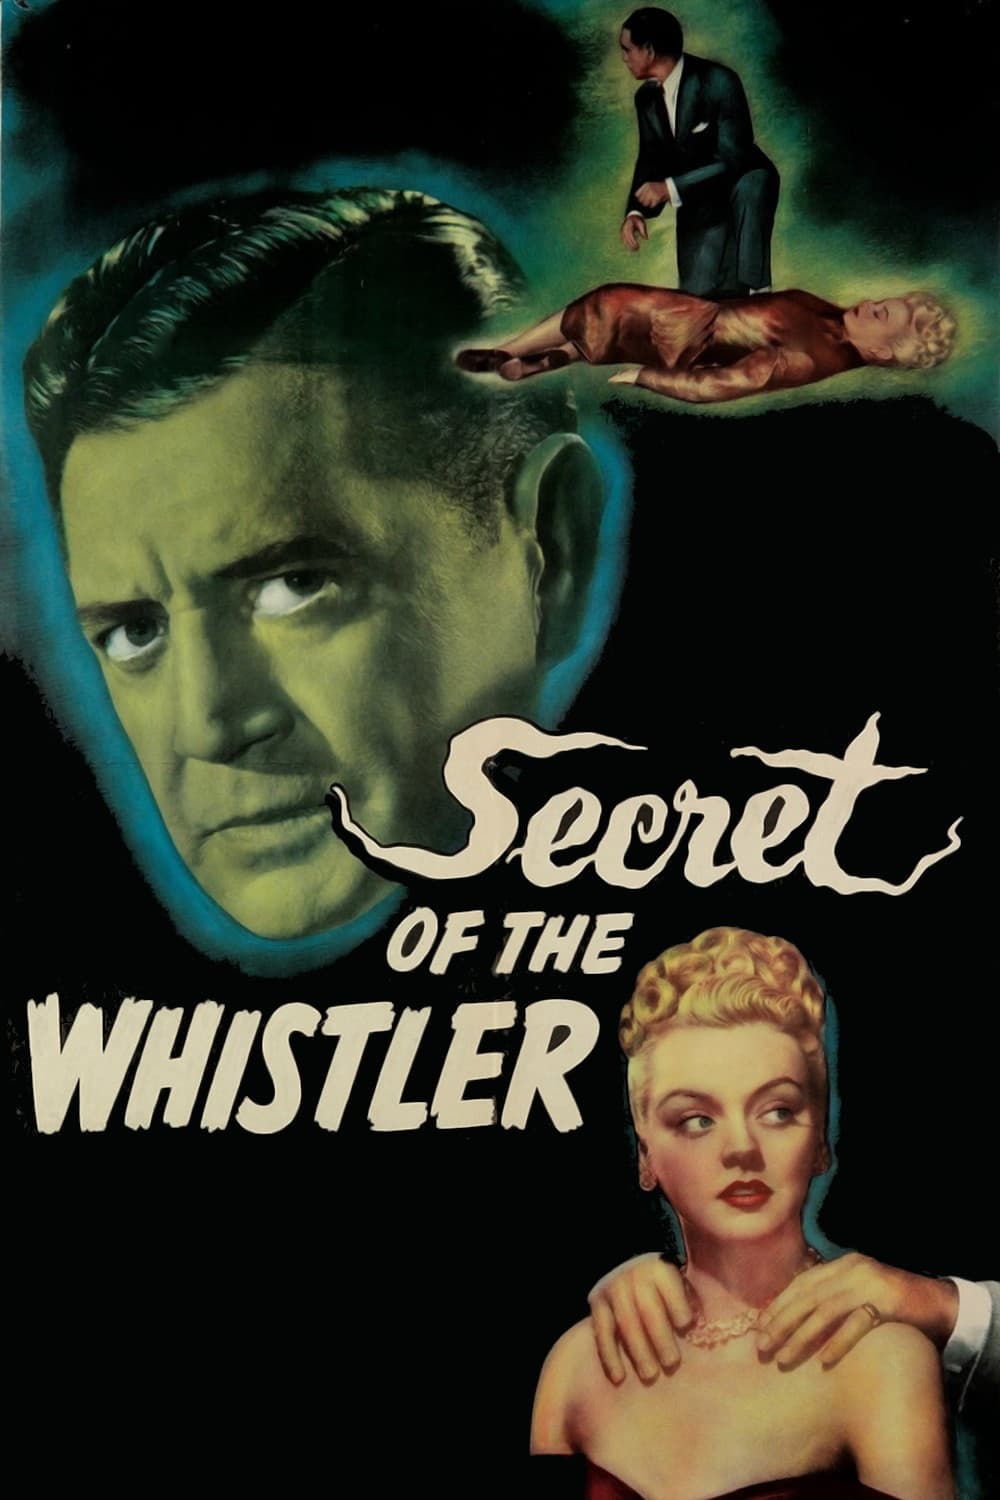 Secret of the Whistler